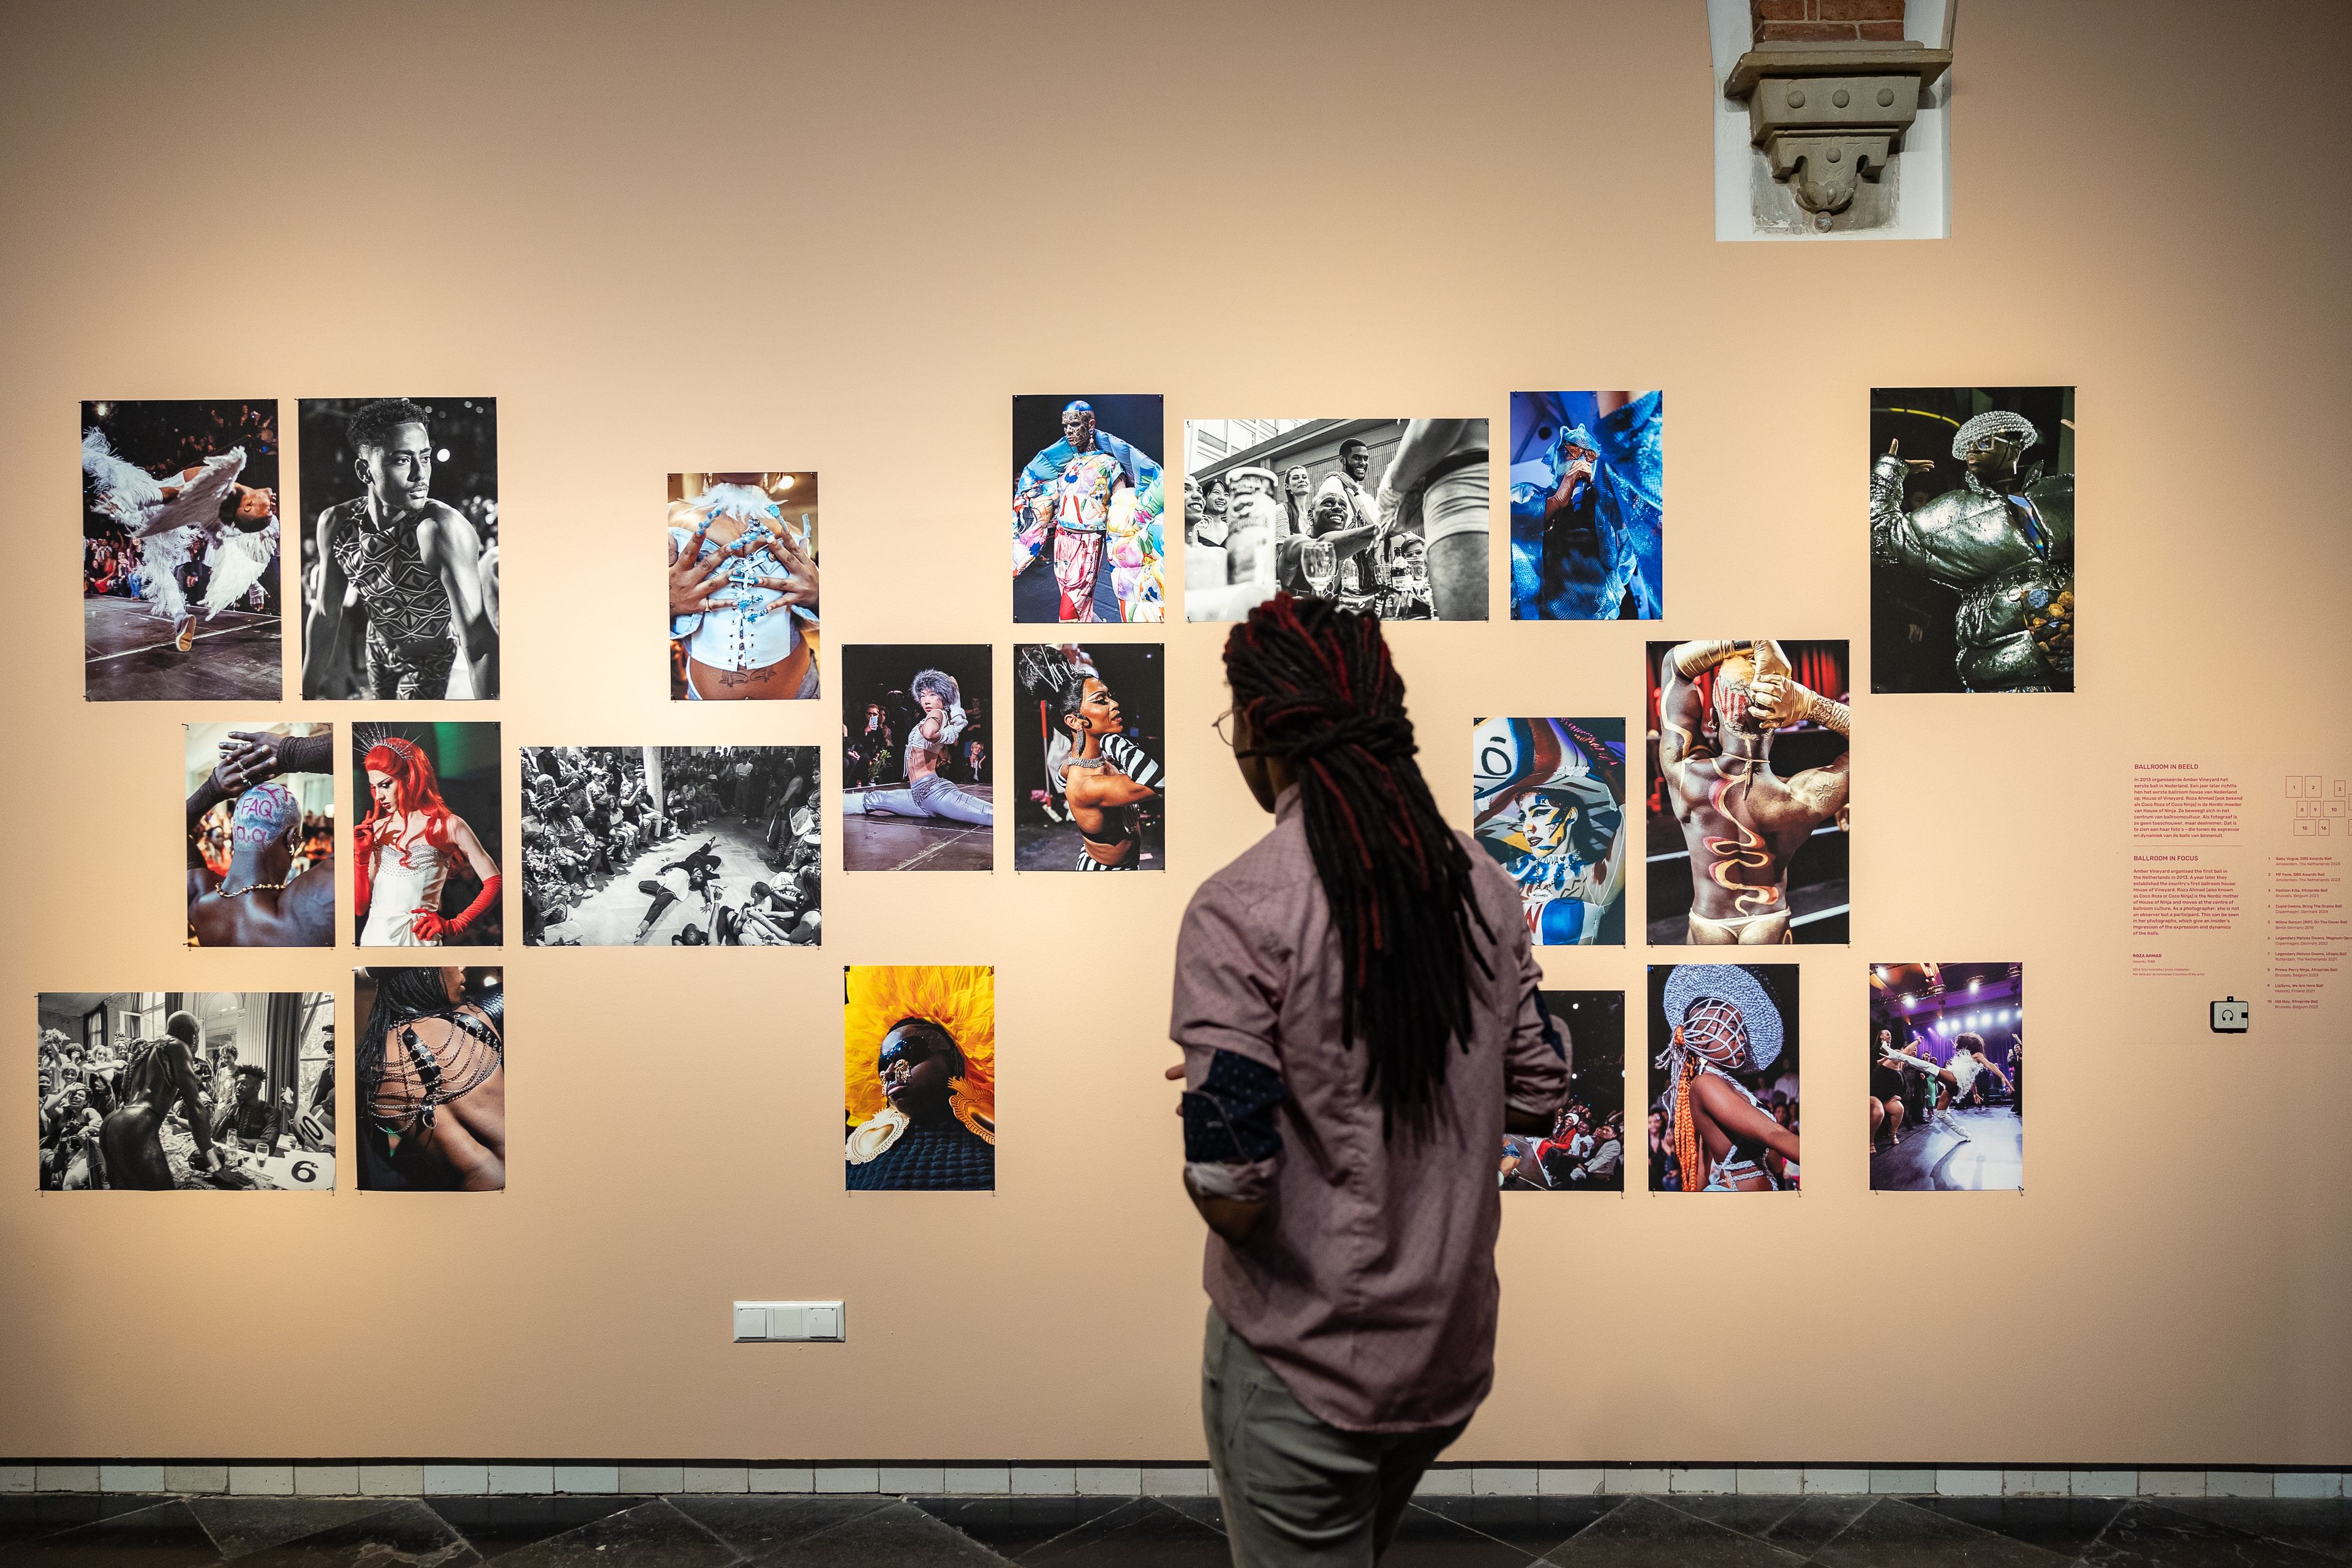 Bezoeker bekijkt de foto's van ballroom tijdens haar bezoek aan tentoonstelling The Art of Drag in het Frans Hals Museum locatie HAL.